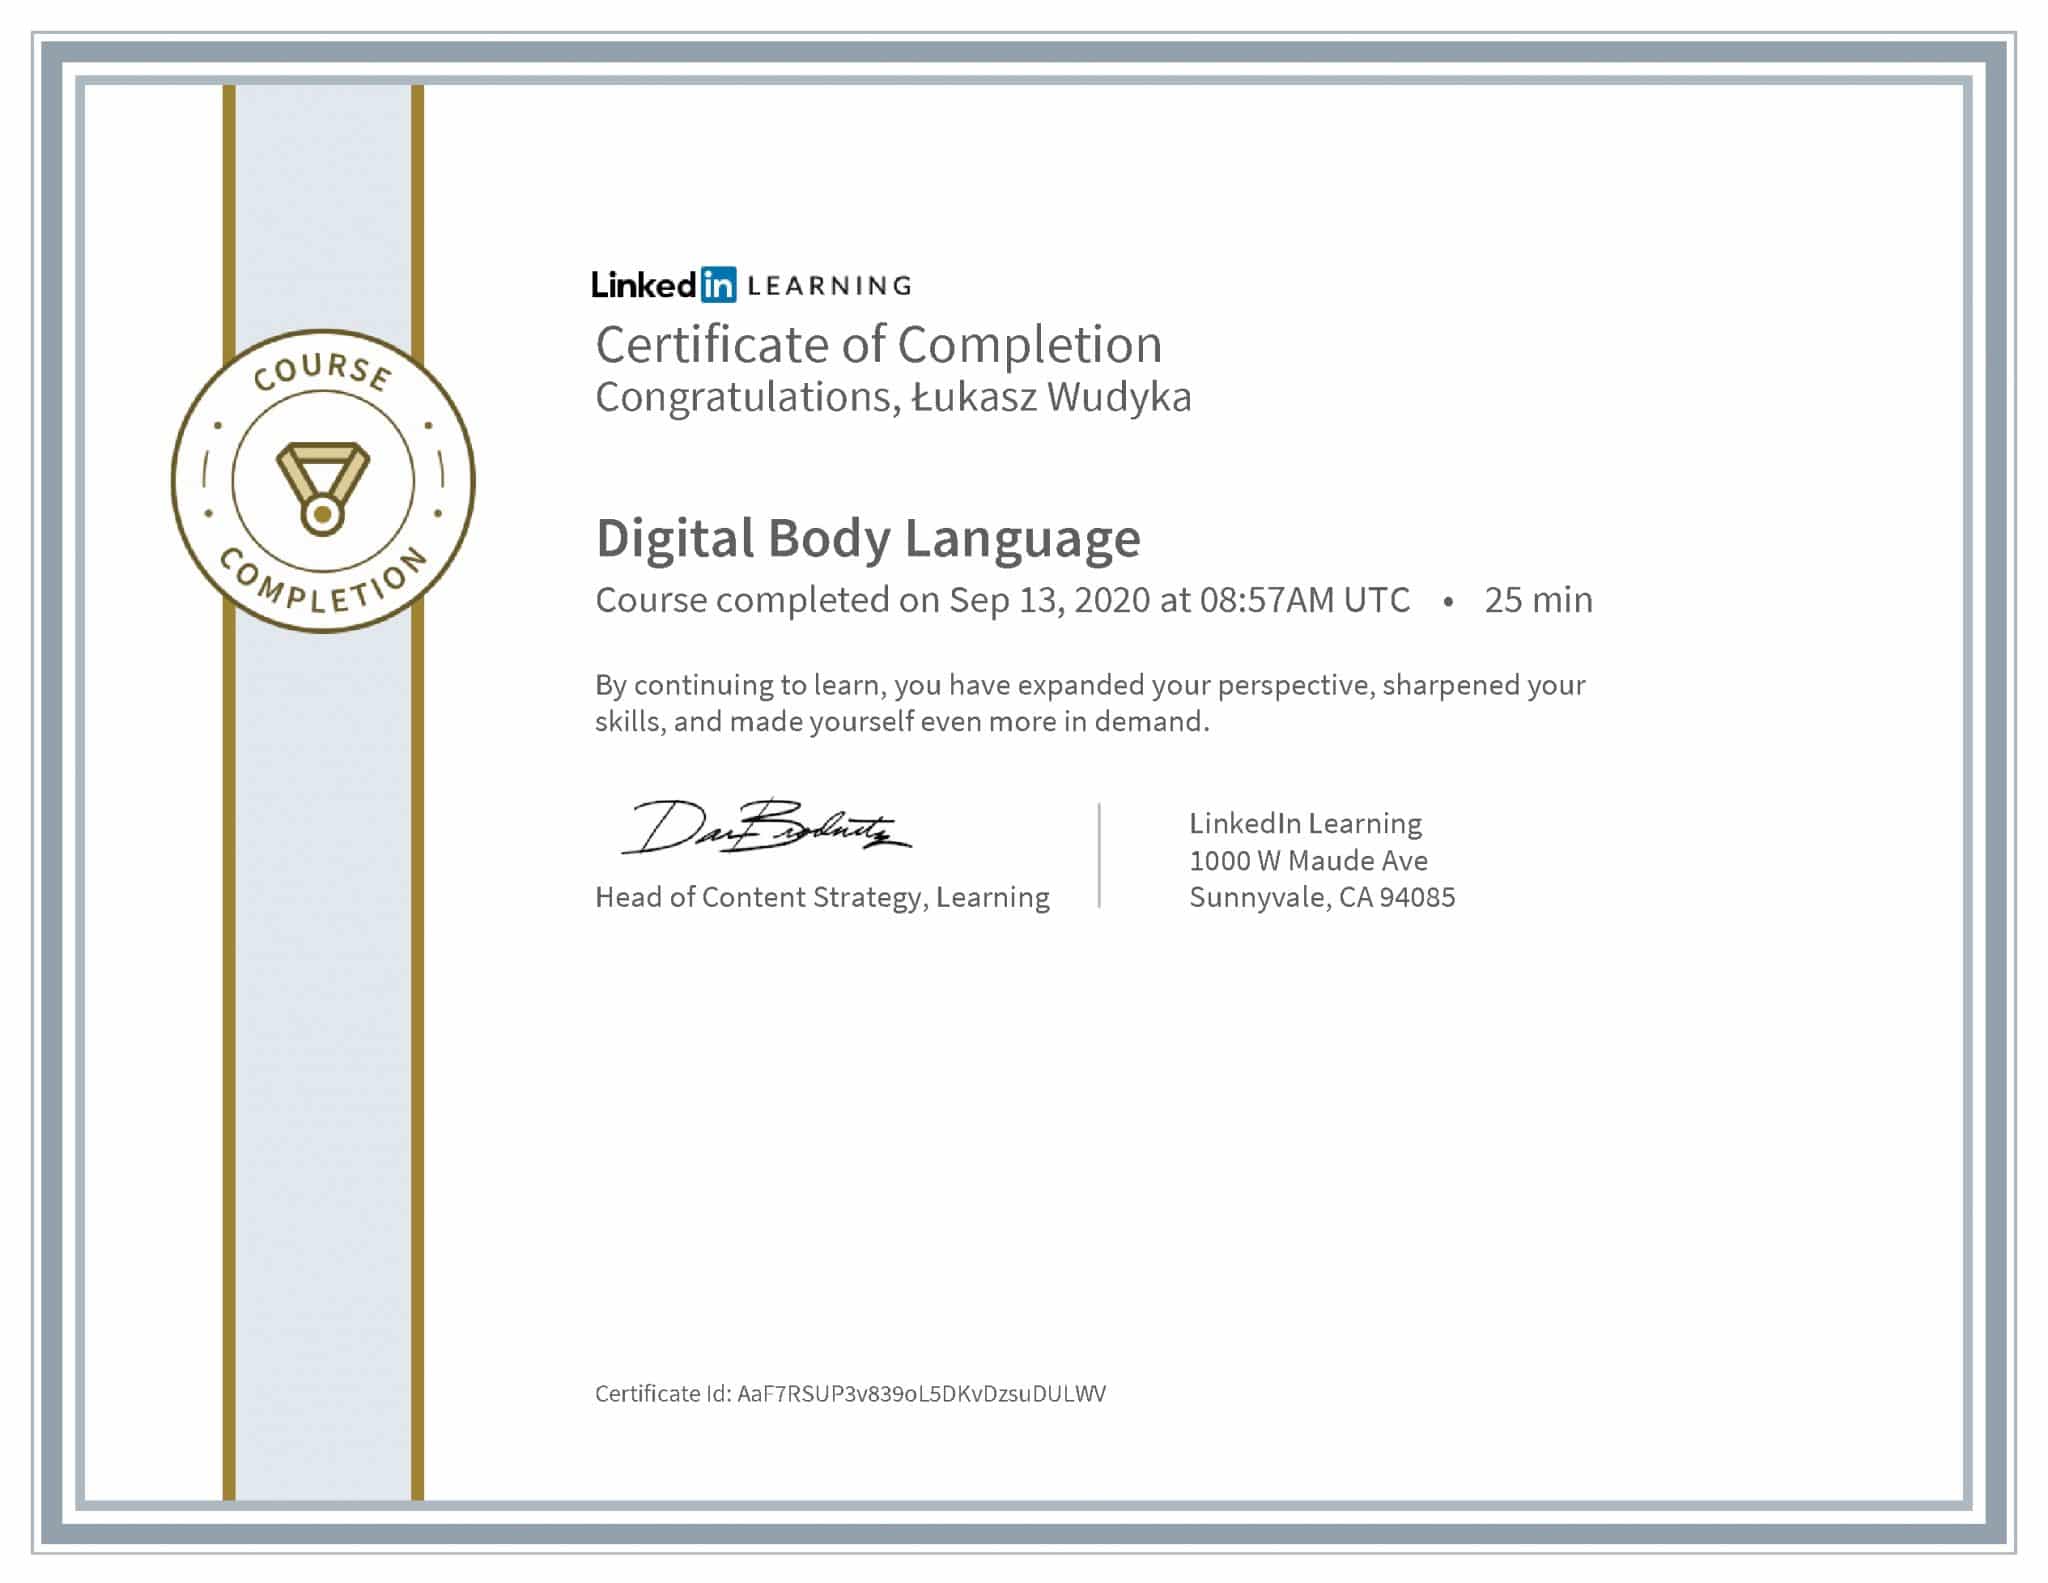 Łukasz Wudyka certyfikat LinkedIn Digital Body Language